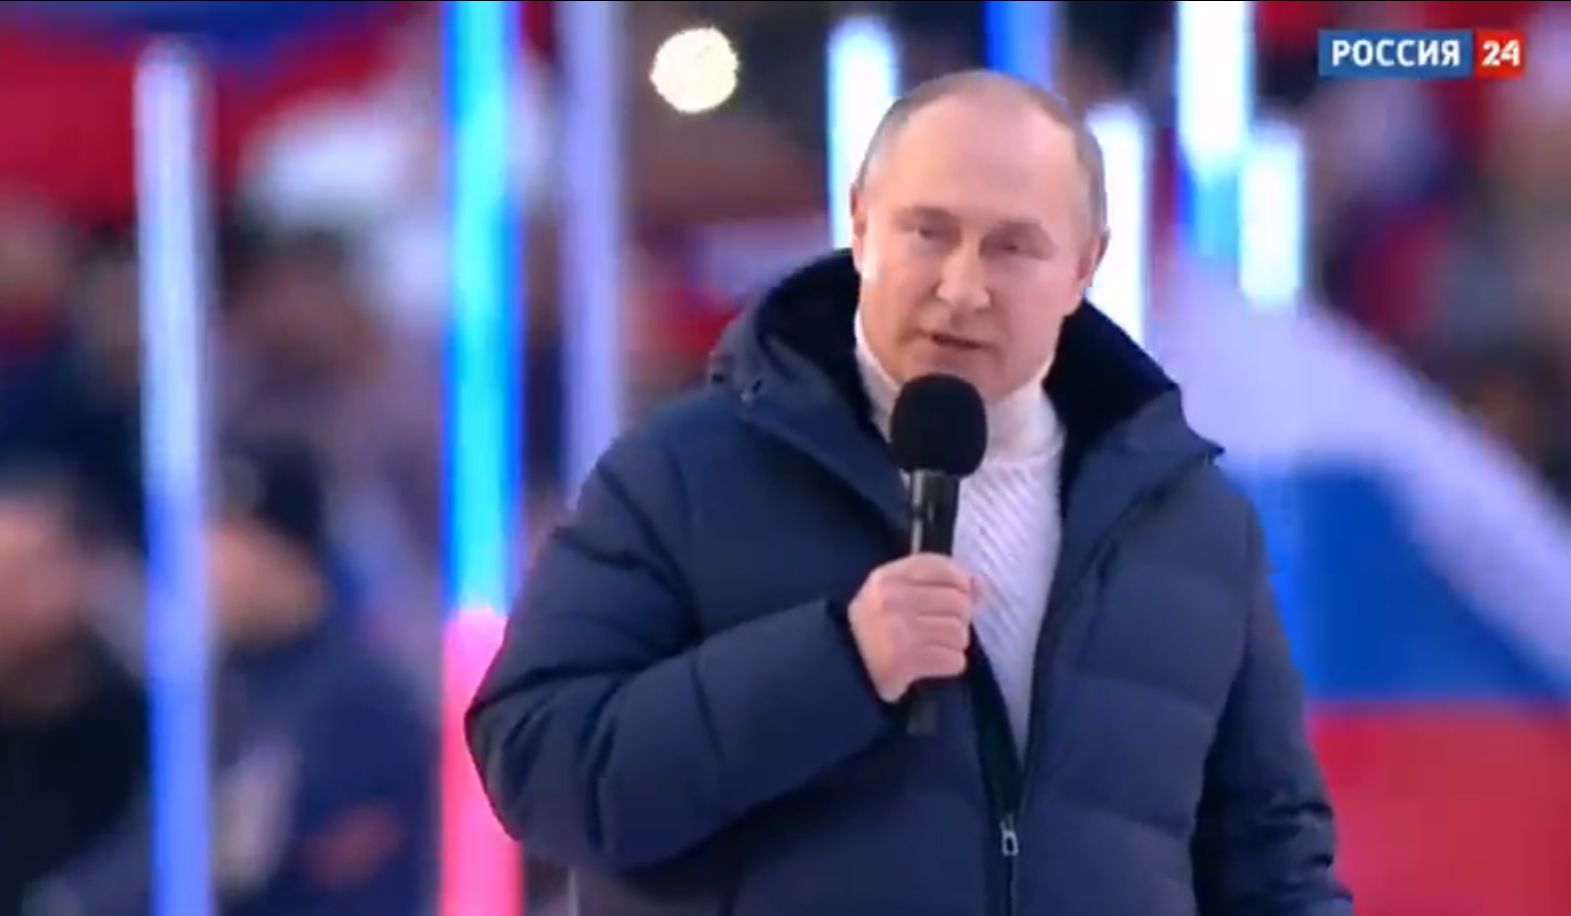 Megszakadt a tévéadás Putyin háborút éltető beszéde alatt